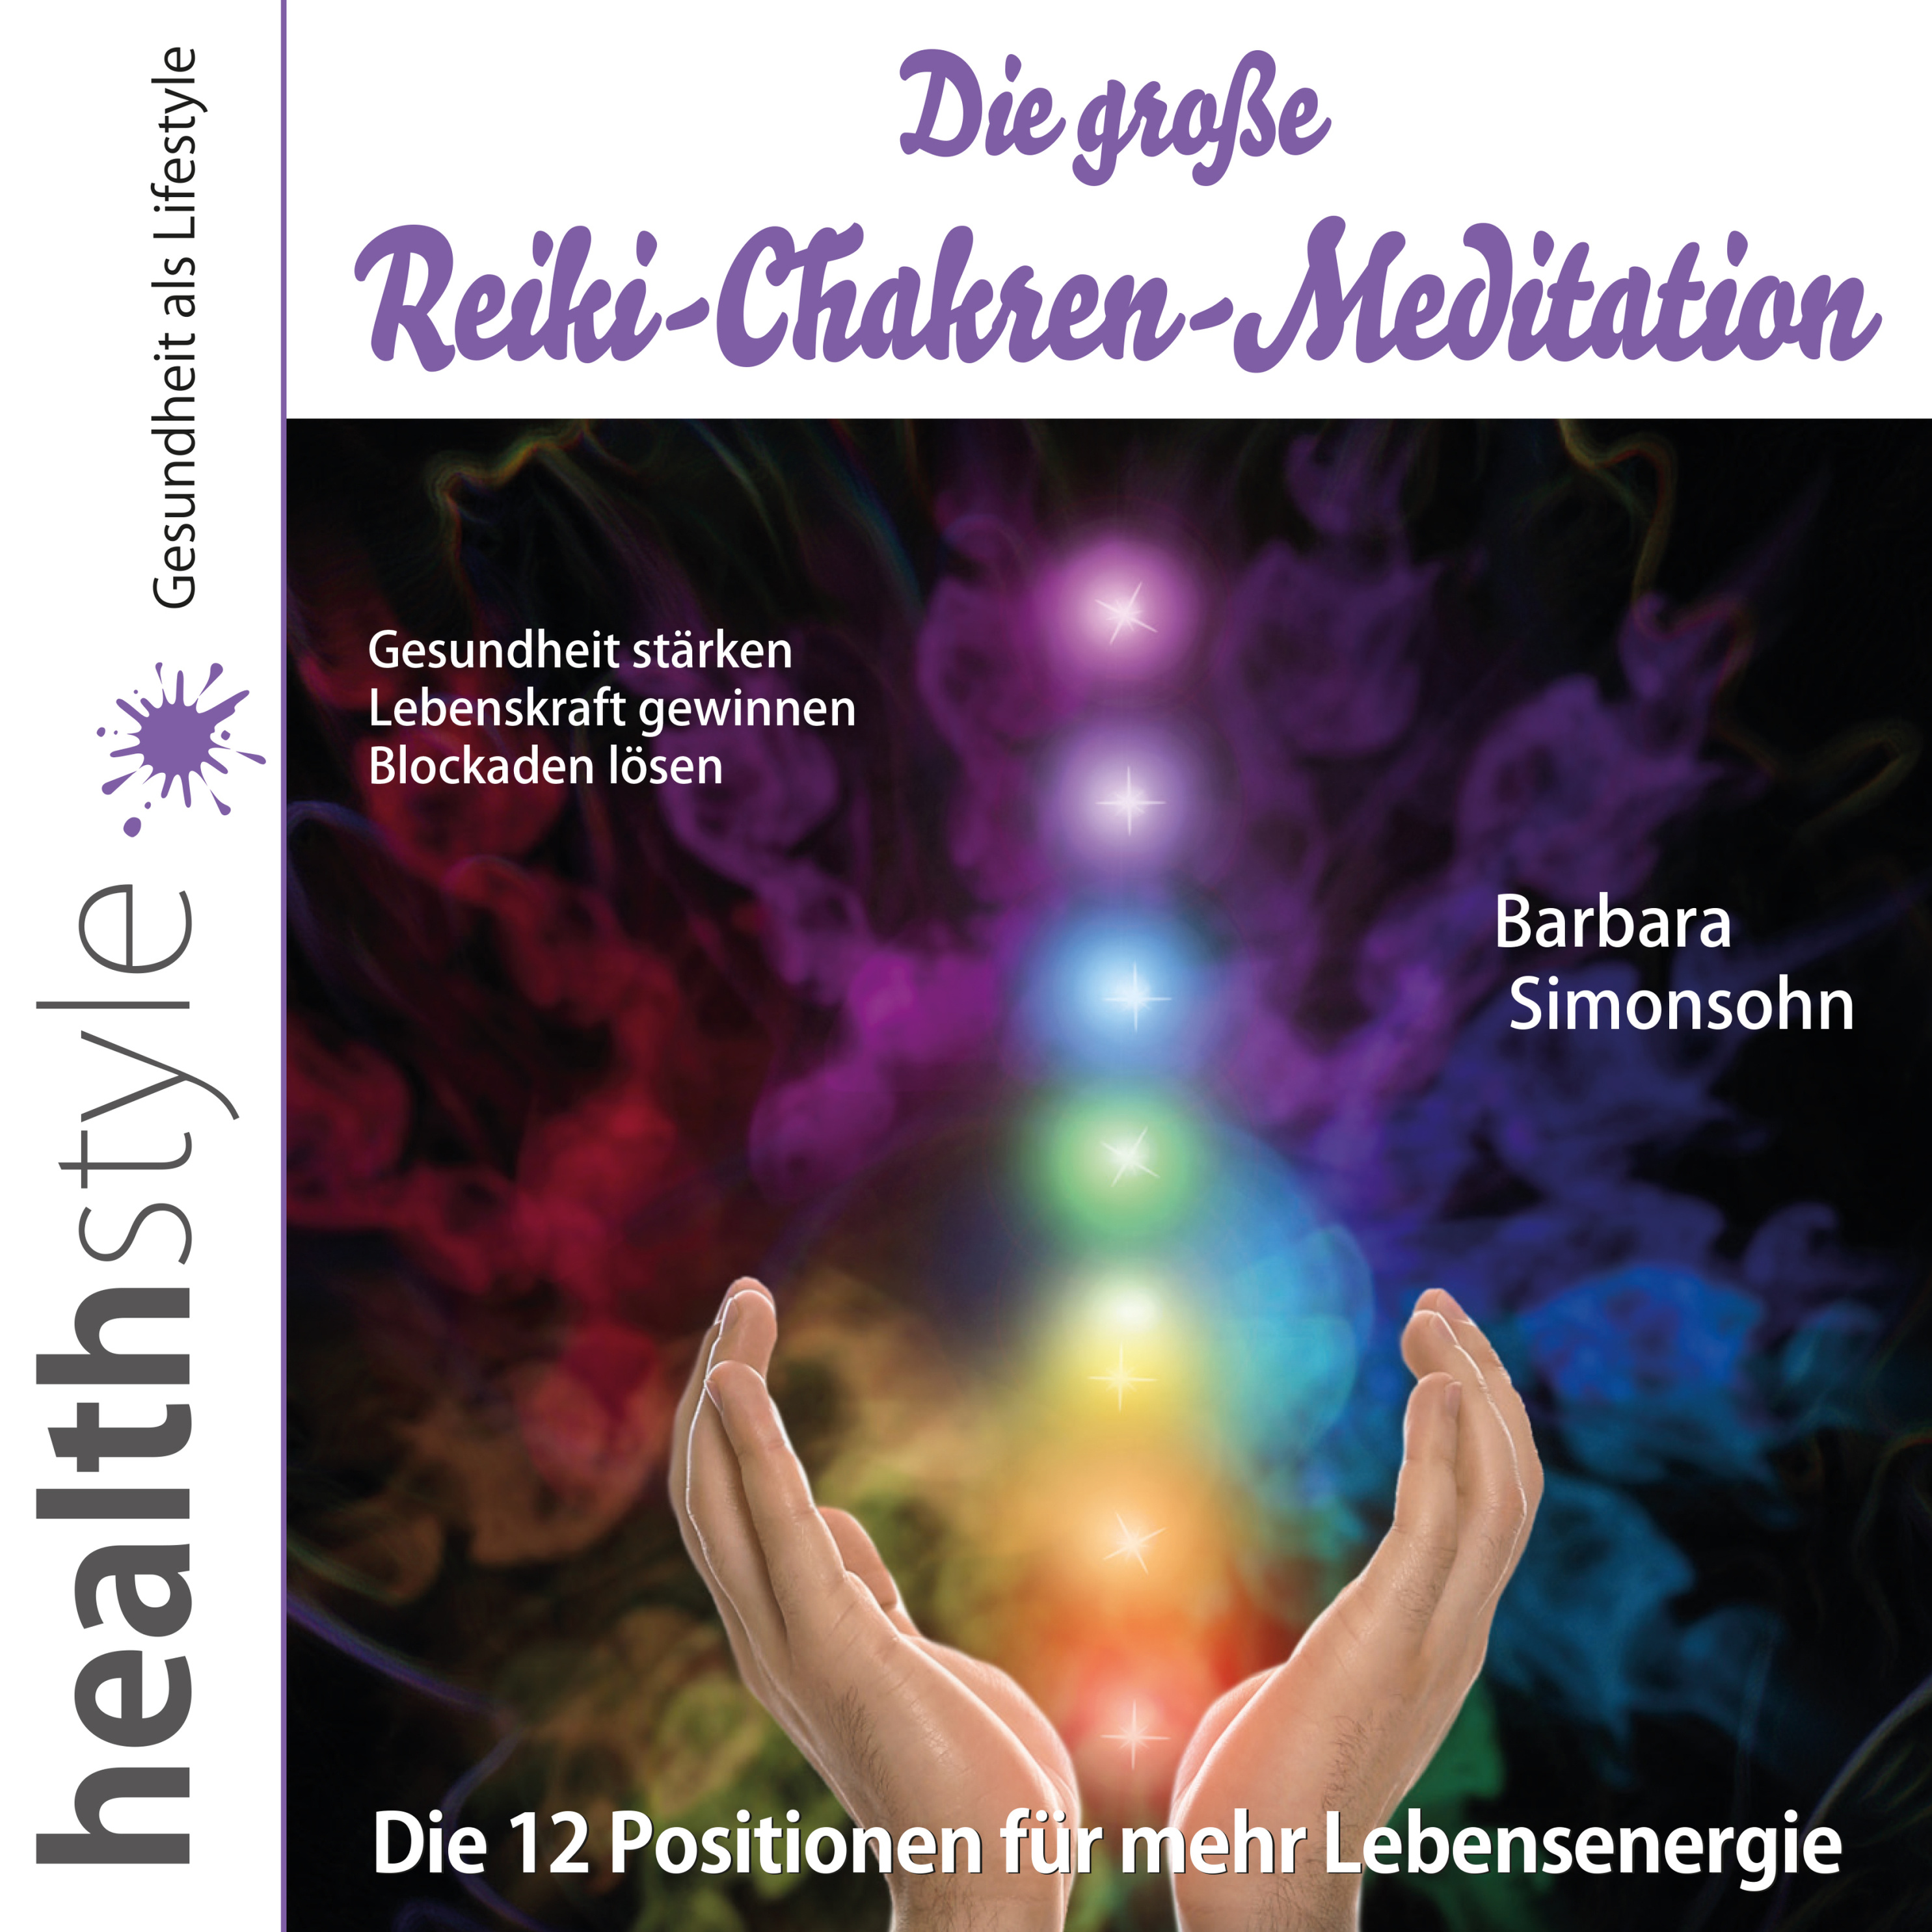 Die grosse Reiki-Chakren-Meditation – Gesundheit stärken, Lebenskraft  gewinnen, Blockaden lösen Hörbuch Download